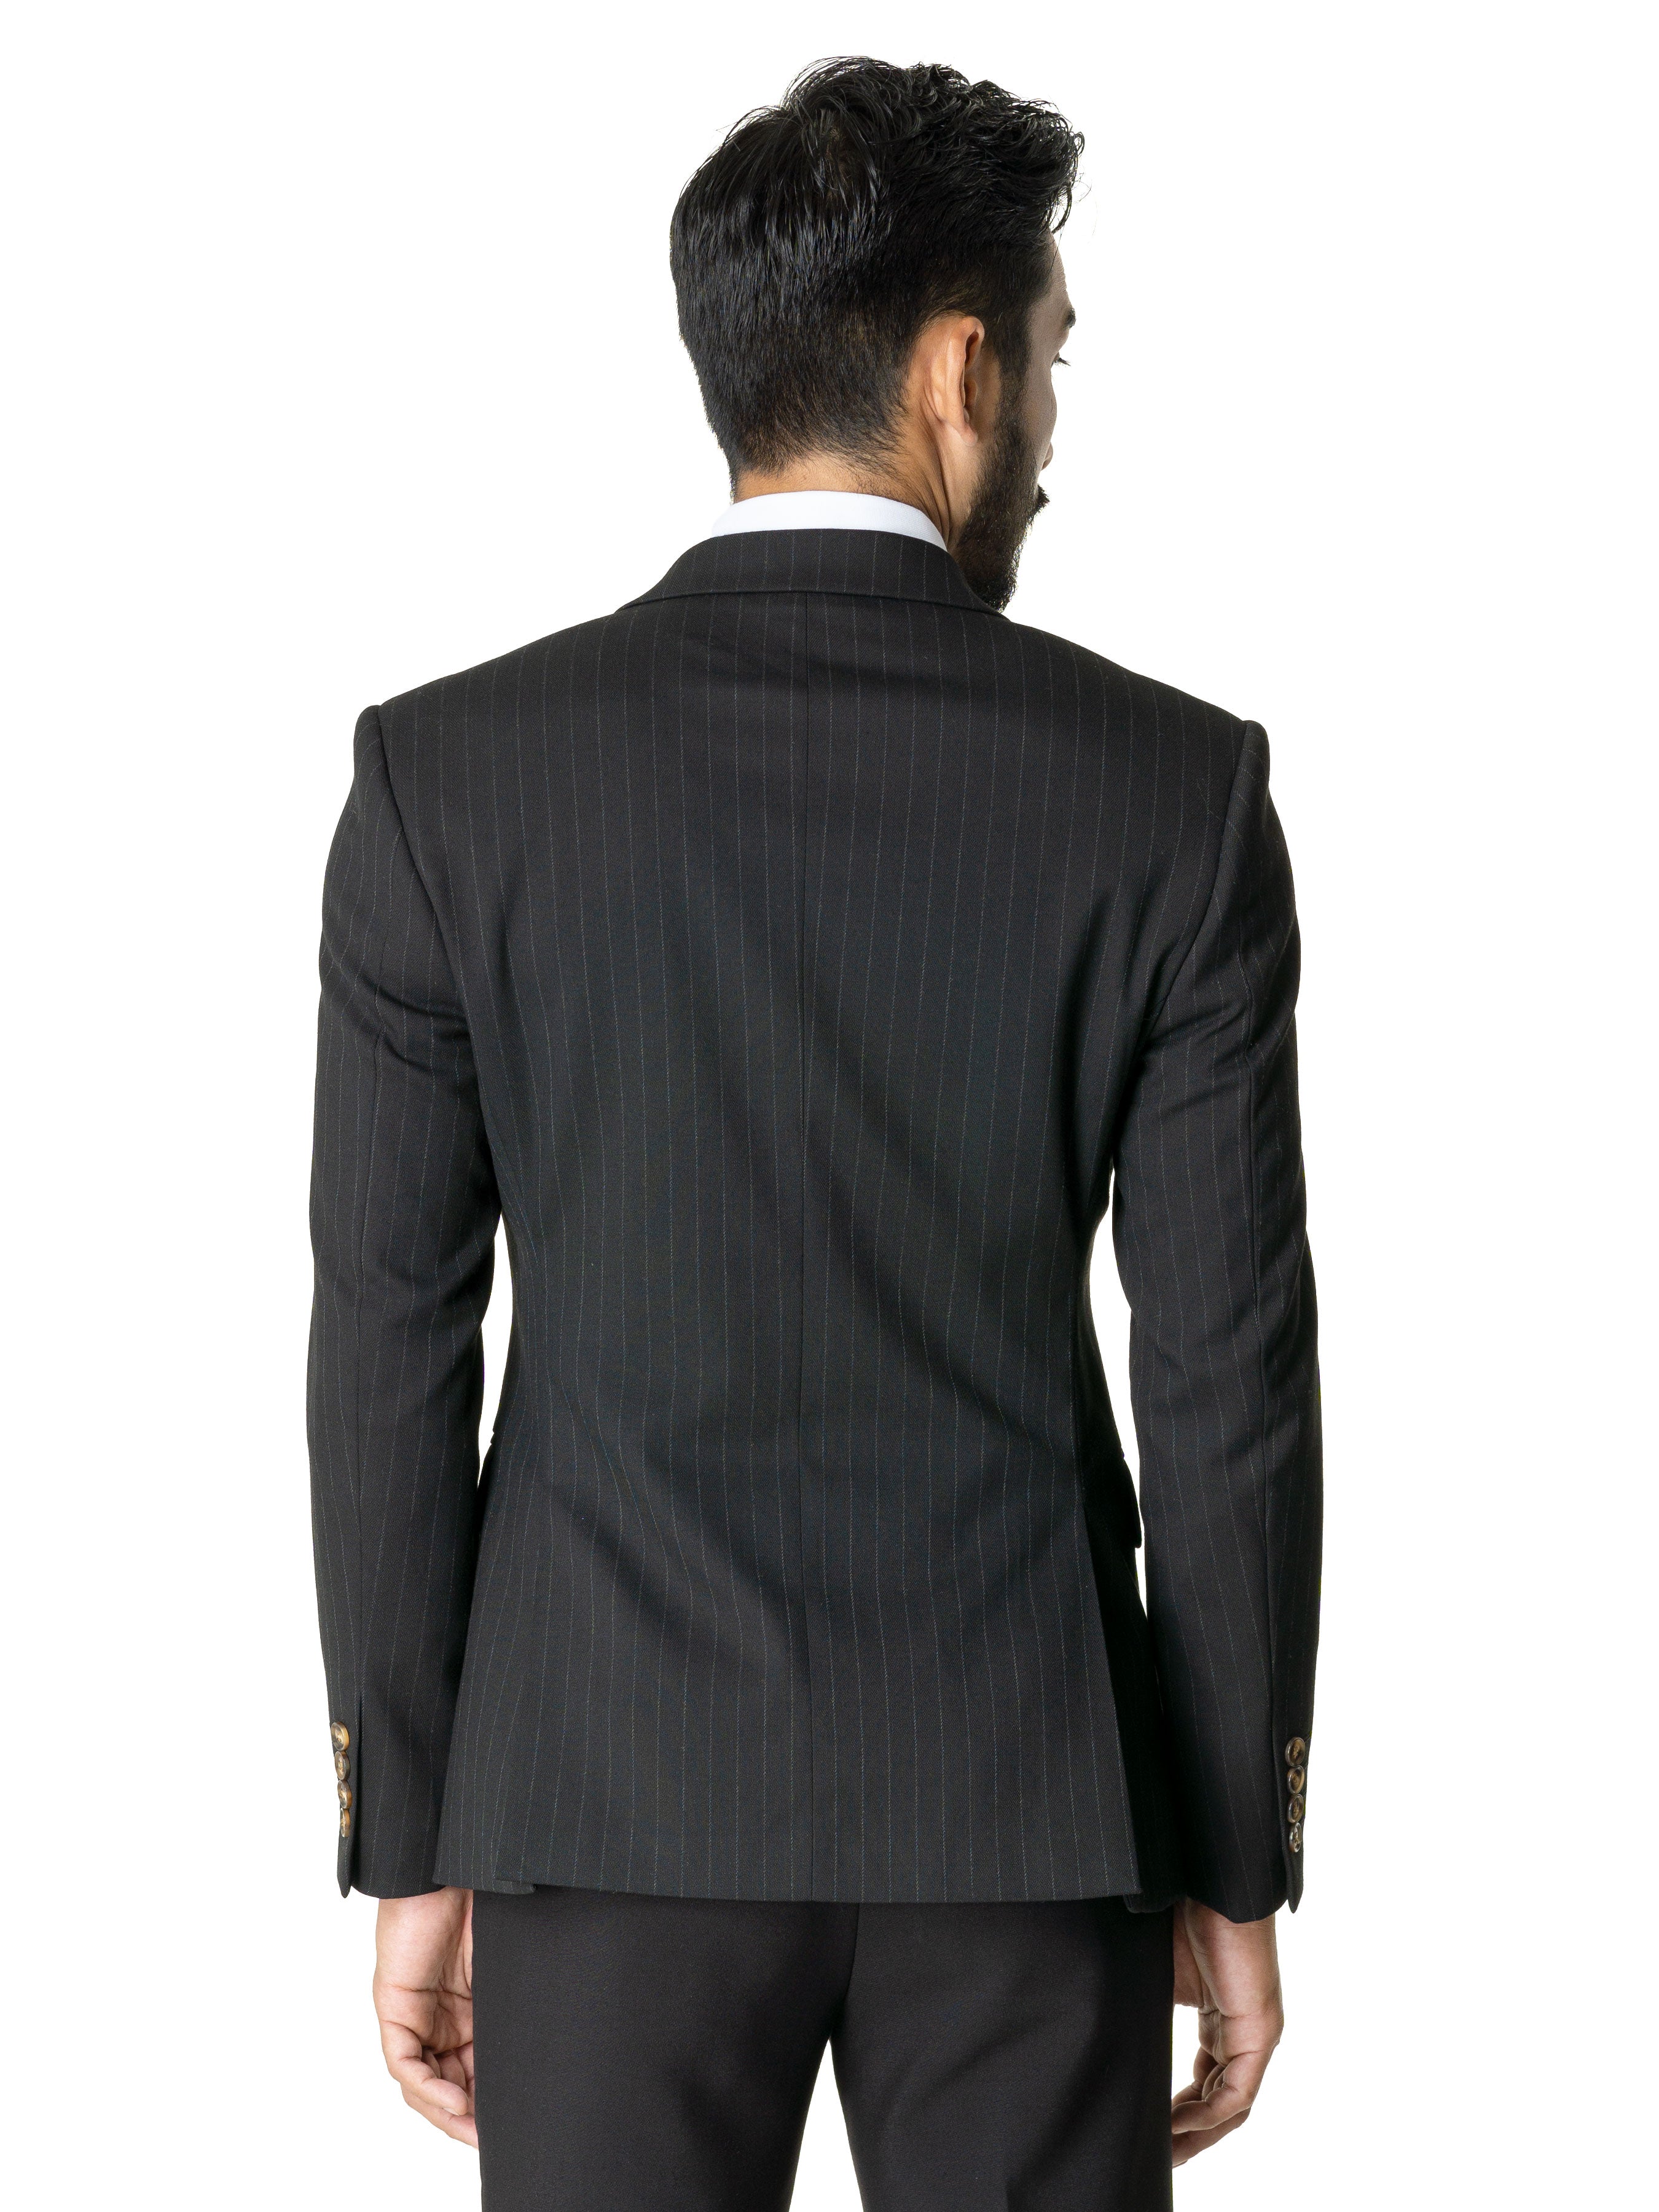 Double Breasted Suit Blazer - Black Stripes (Peak Lapel) - Zeve Shoes